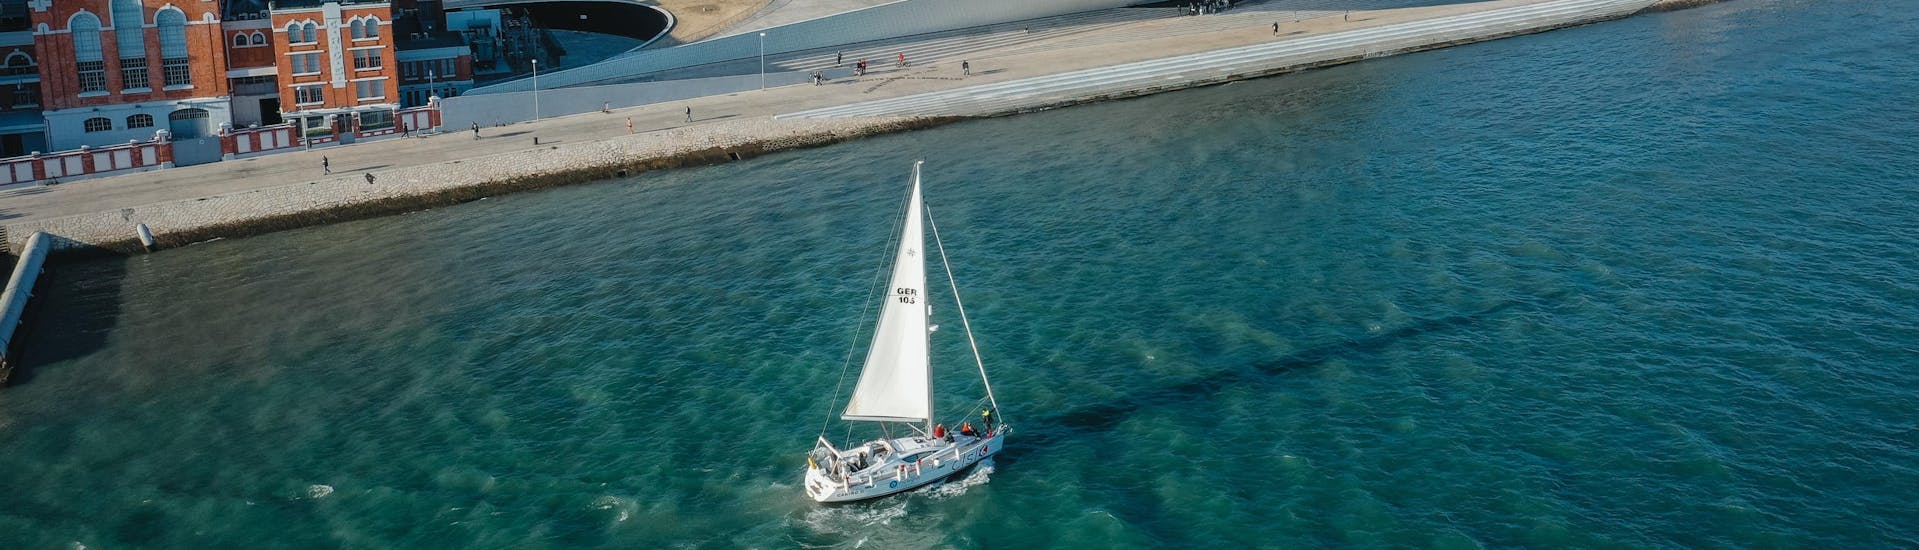 Unser Boot fährt auf dem Tajo während einer Segelboottour ab Lissabon mit Enjoy Tagus.